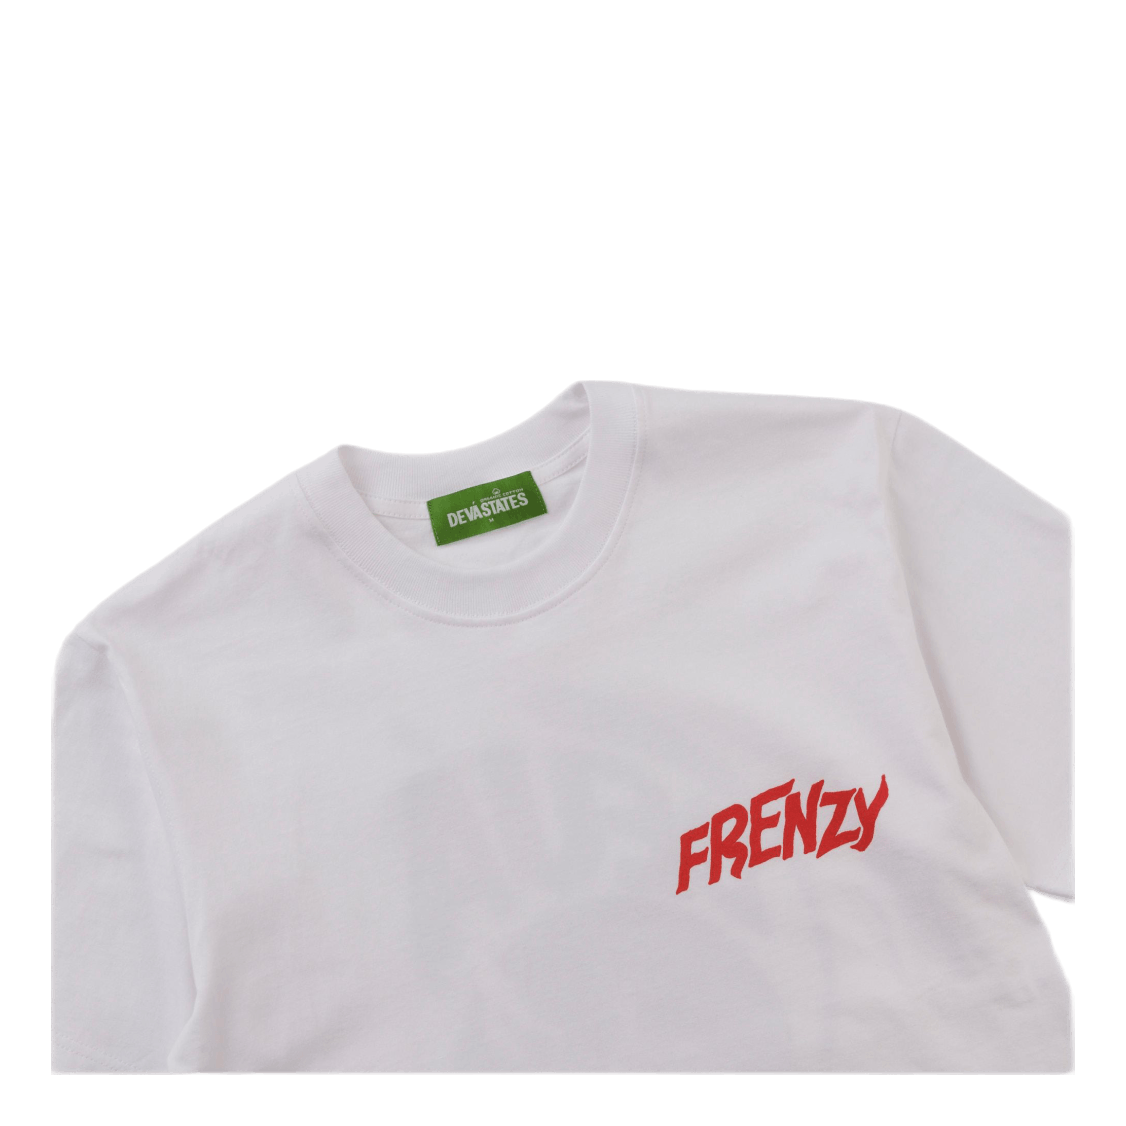 Tshirt Frenzy White